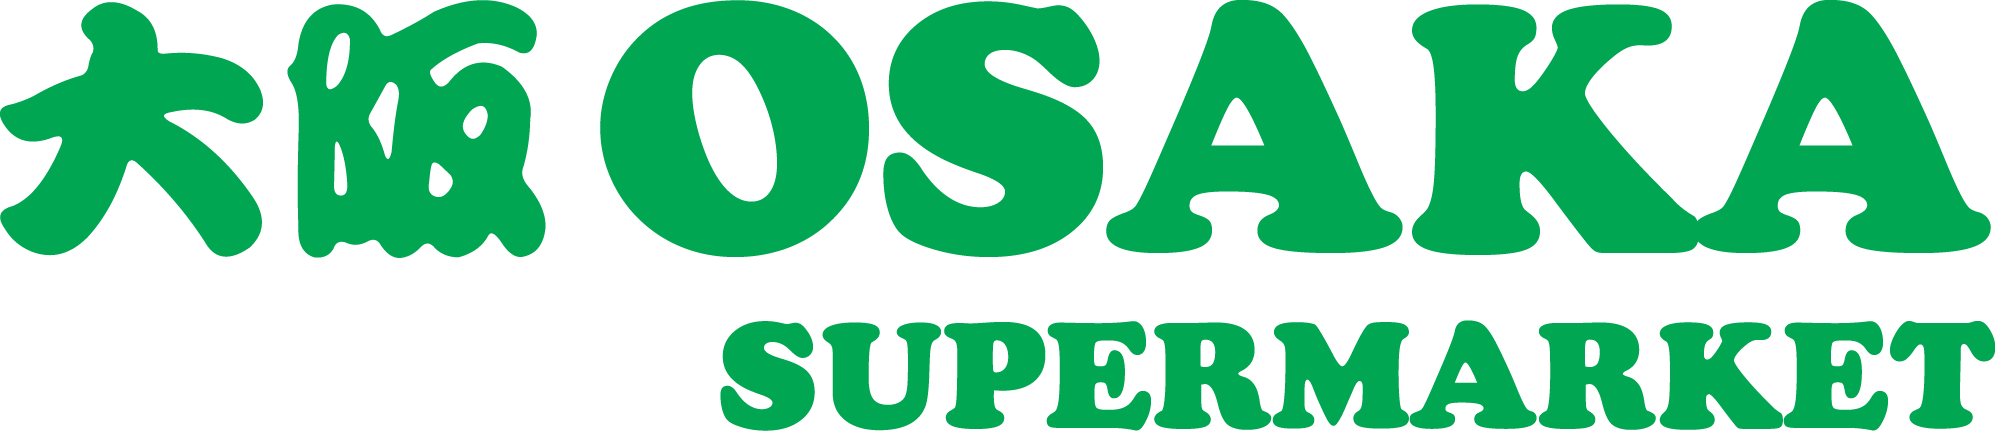 Osaka Supermarket logo